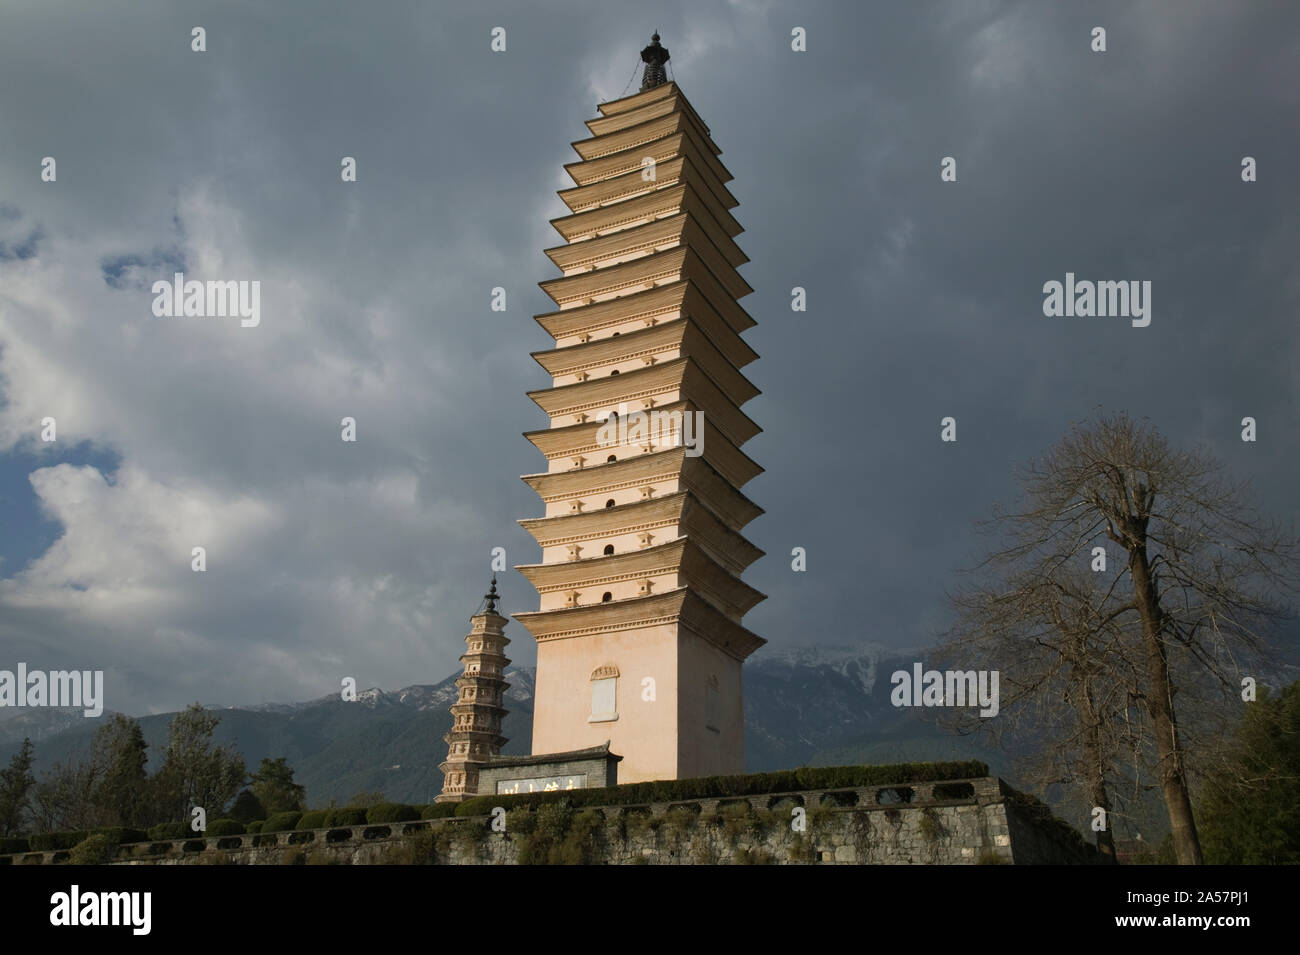 Low angle view of Qianxun Pagoda, Three Pagodas, Old Town, Dali, Yunnan Province, China Stock Photo